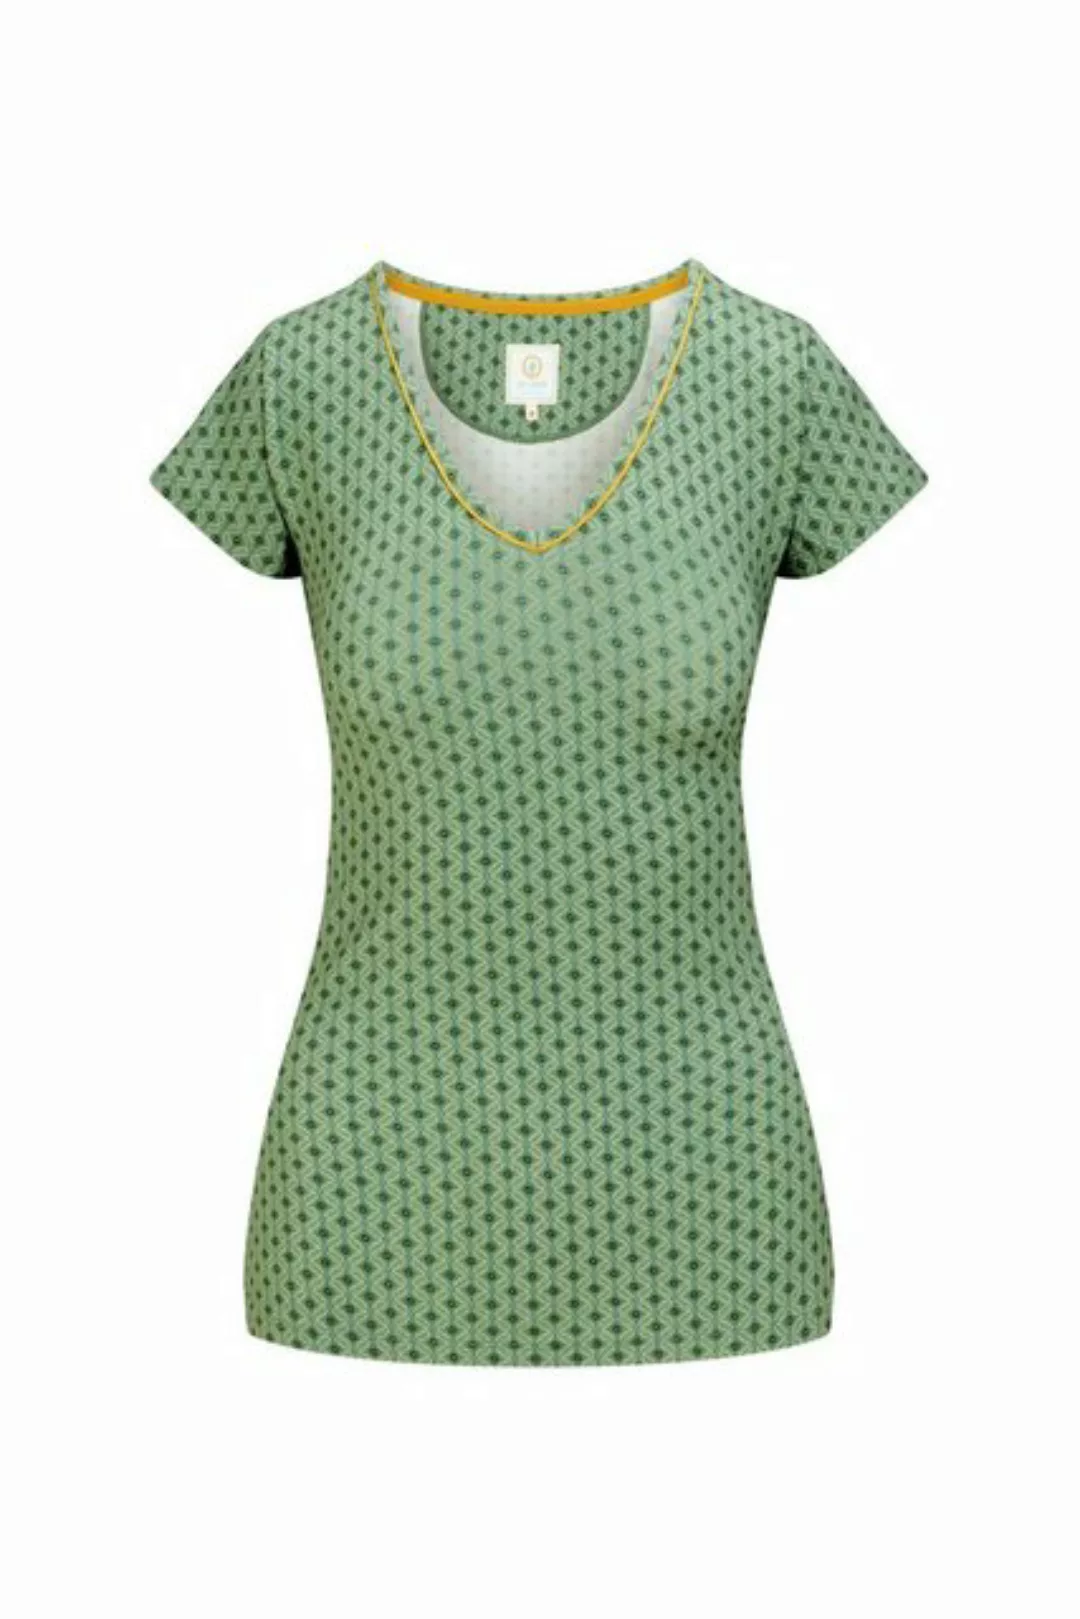 Longtop Toy Short Sleeve Top Tegola Green L günstig online kaufen